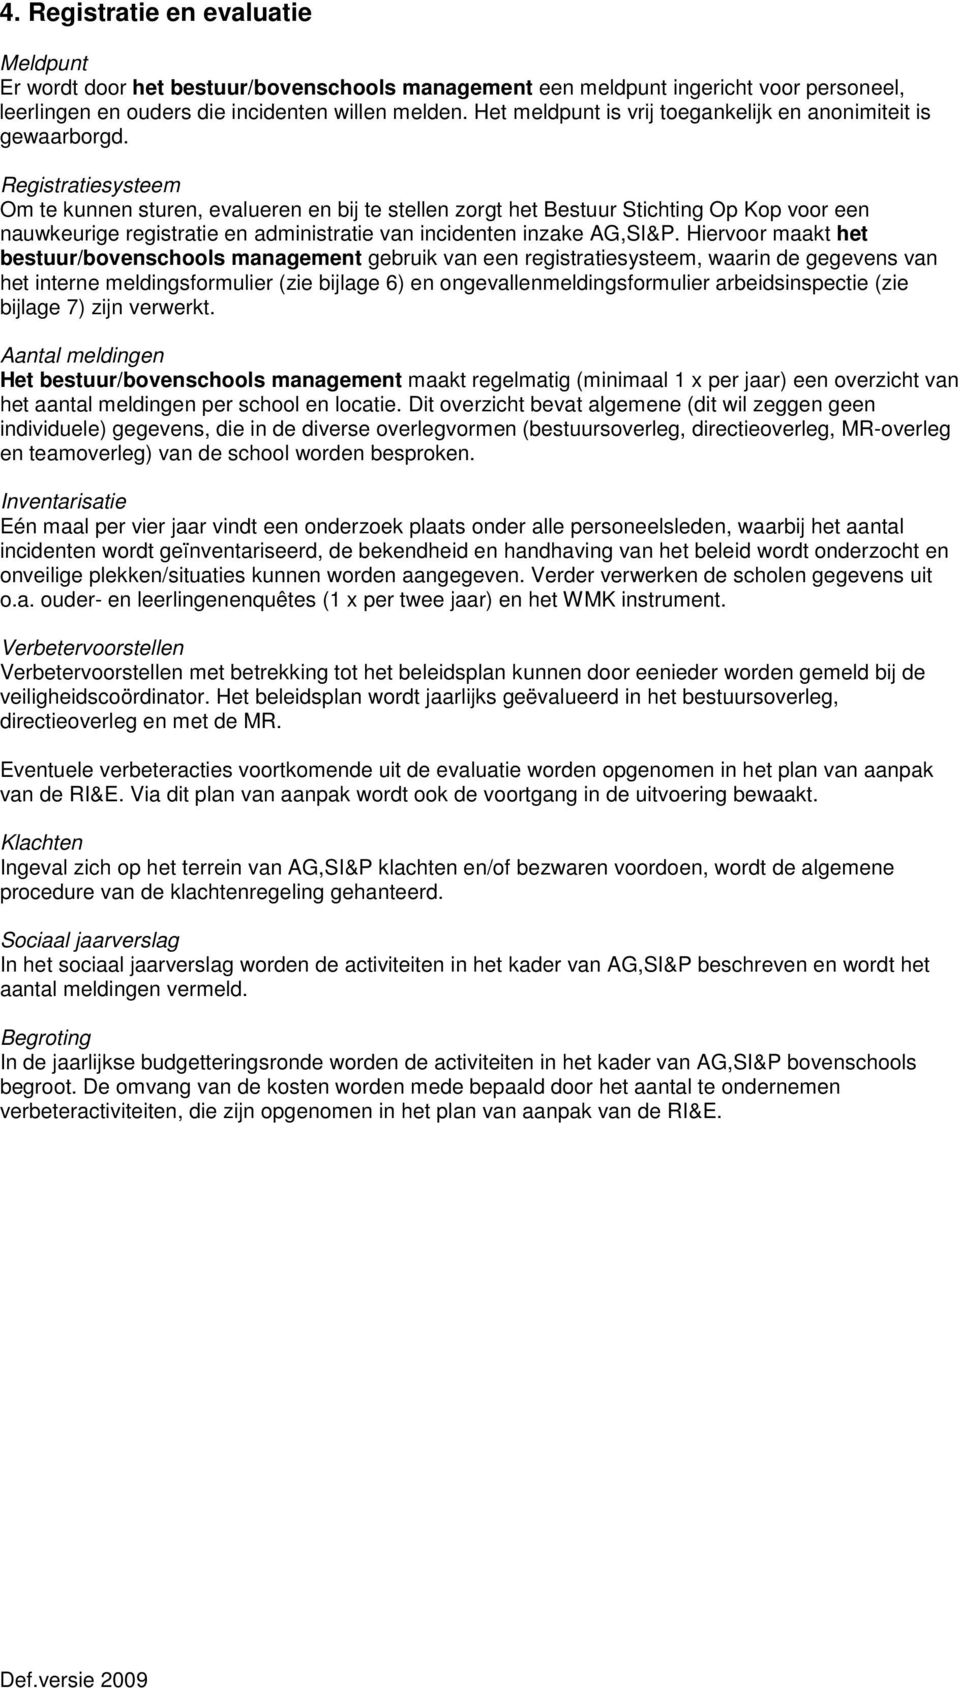 Registratiesysteem Om te kunnen sturen, evalueren en bij te stellen zorgt het Bestuur Stichting Op Kop voor een nauwkeurige registratie en administratie van incidenten inzake AG,SI&P.